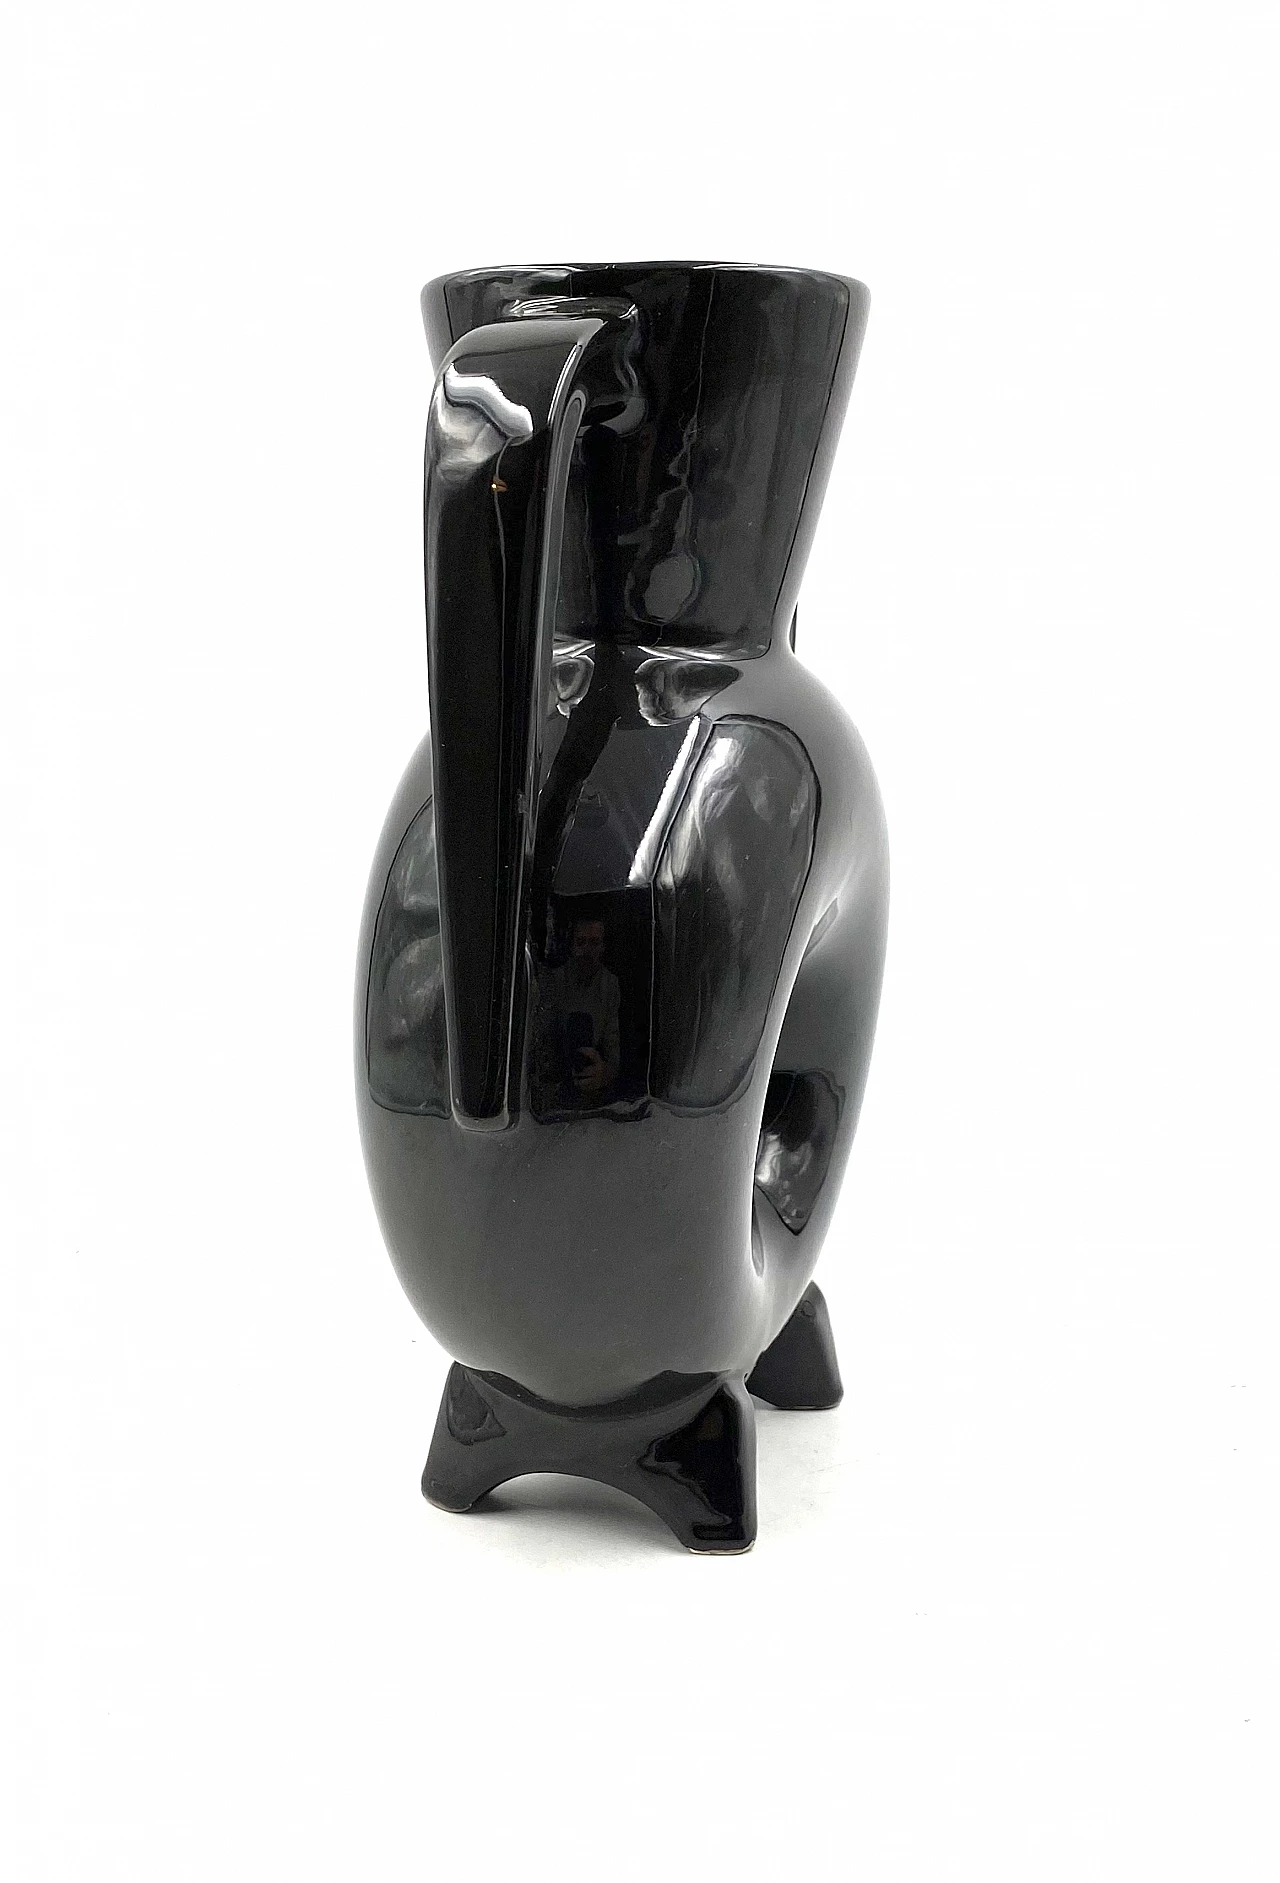 Vaso moderno in ceramica nera, anni '70 16